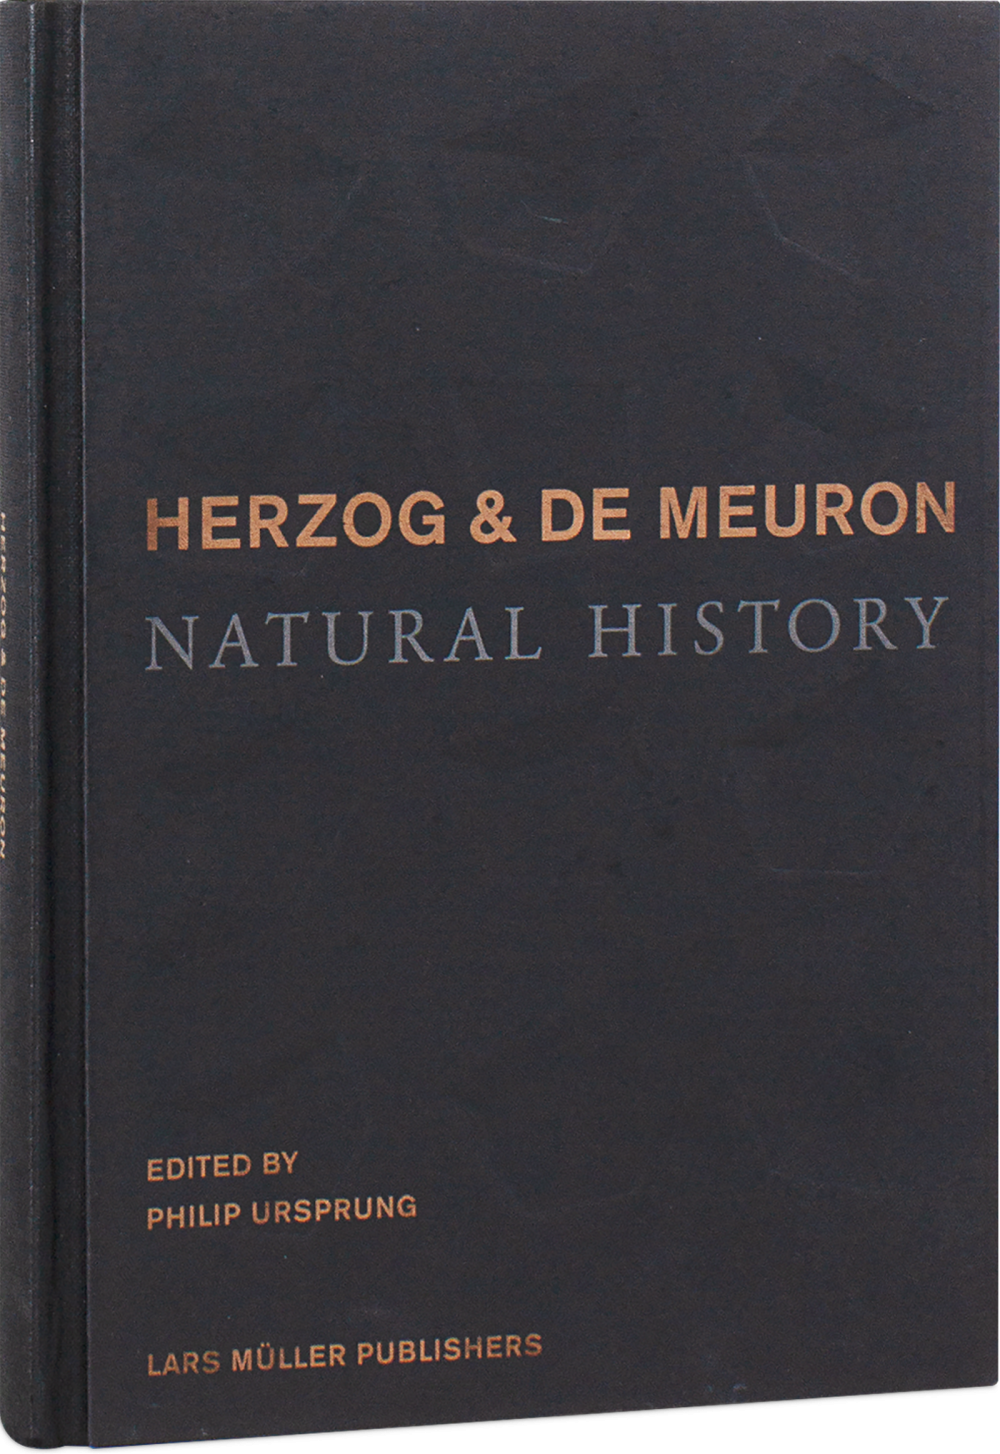 Herzog & de Meuron: Natural History (signed copy) | Lars Müller 